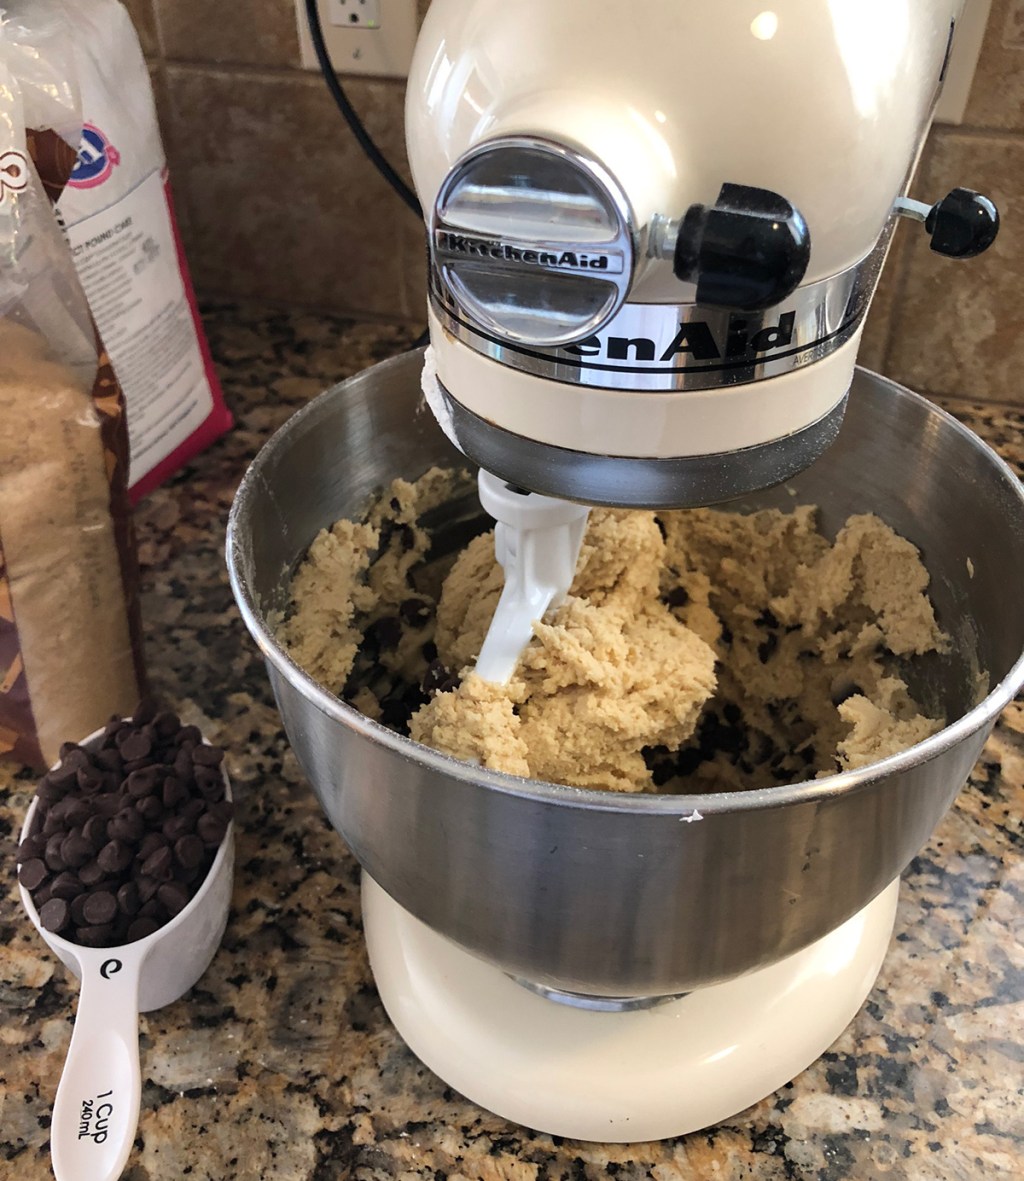 Kitchenaid mixer stirring cookie dough